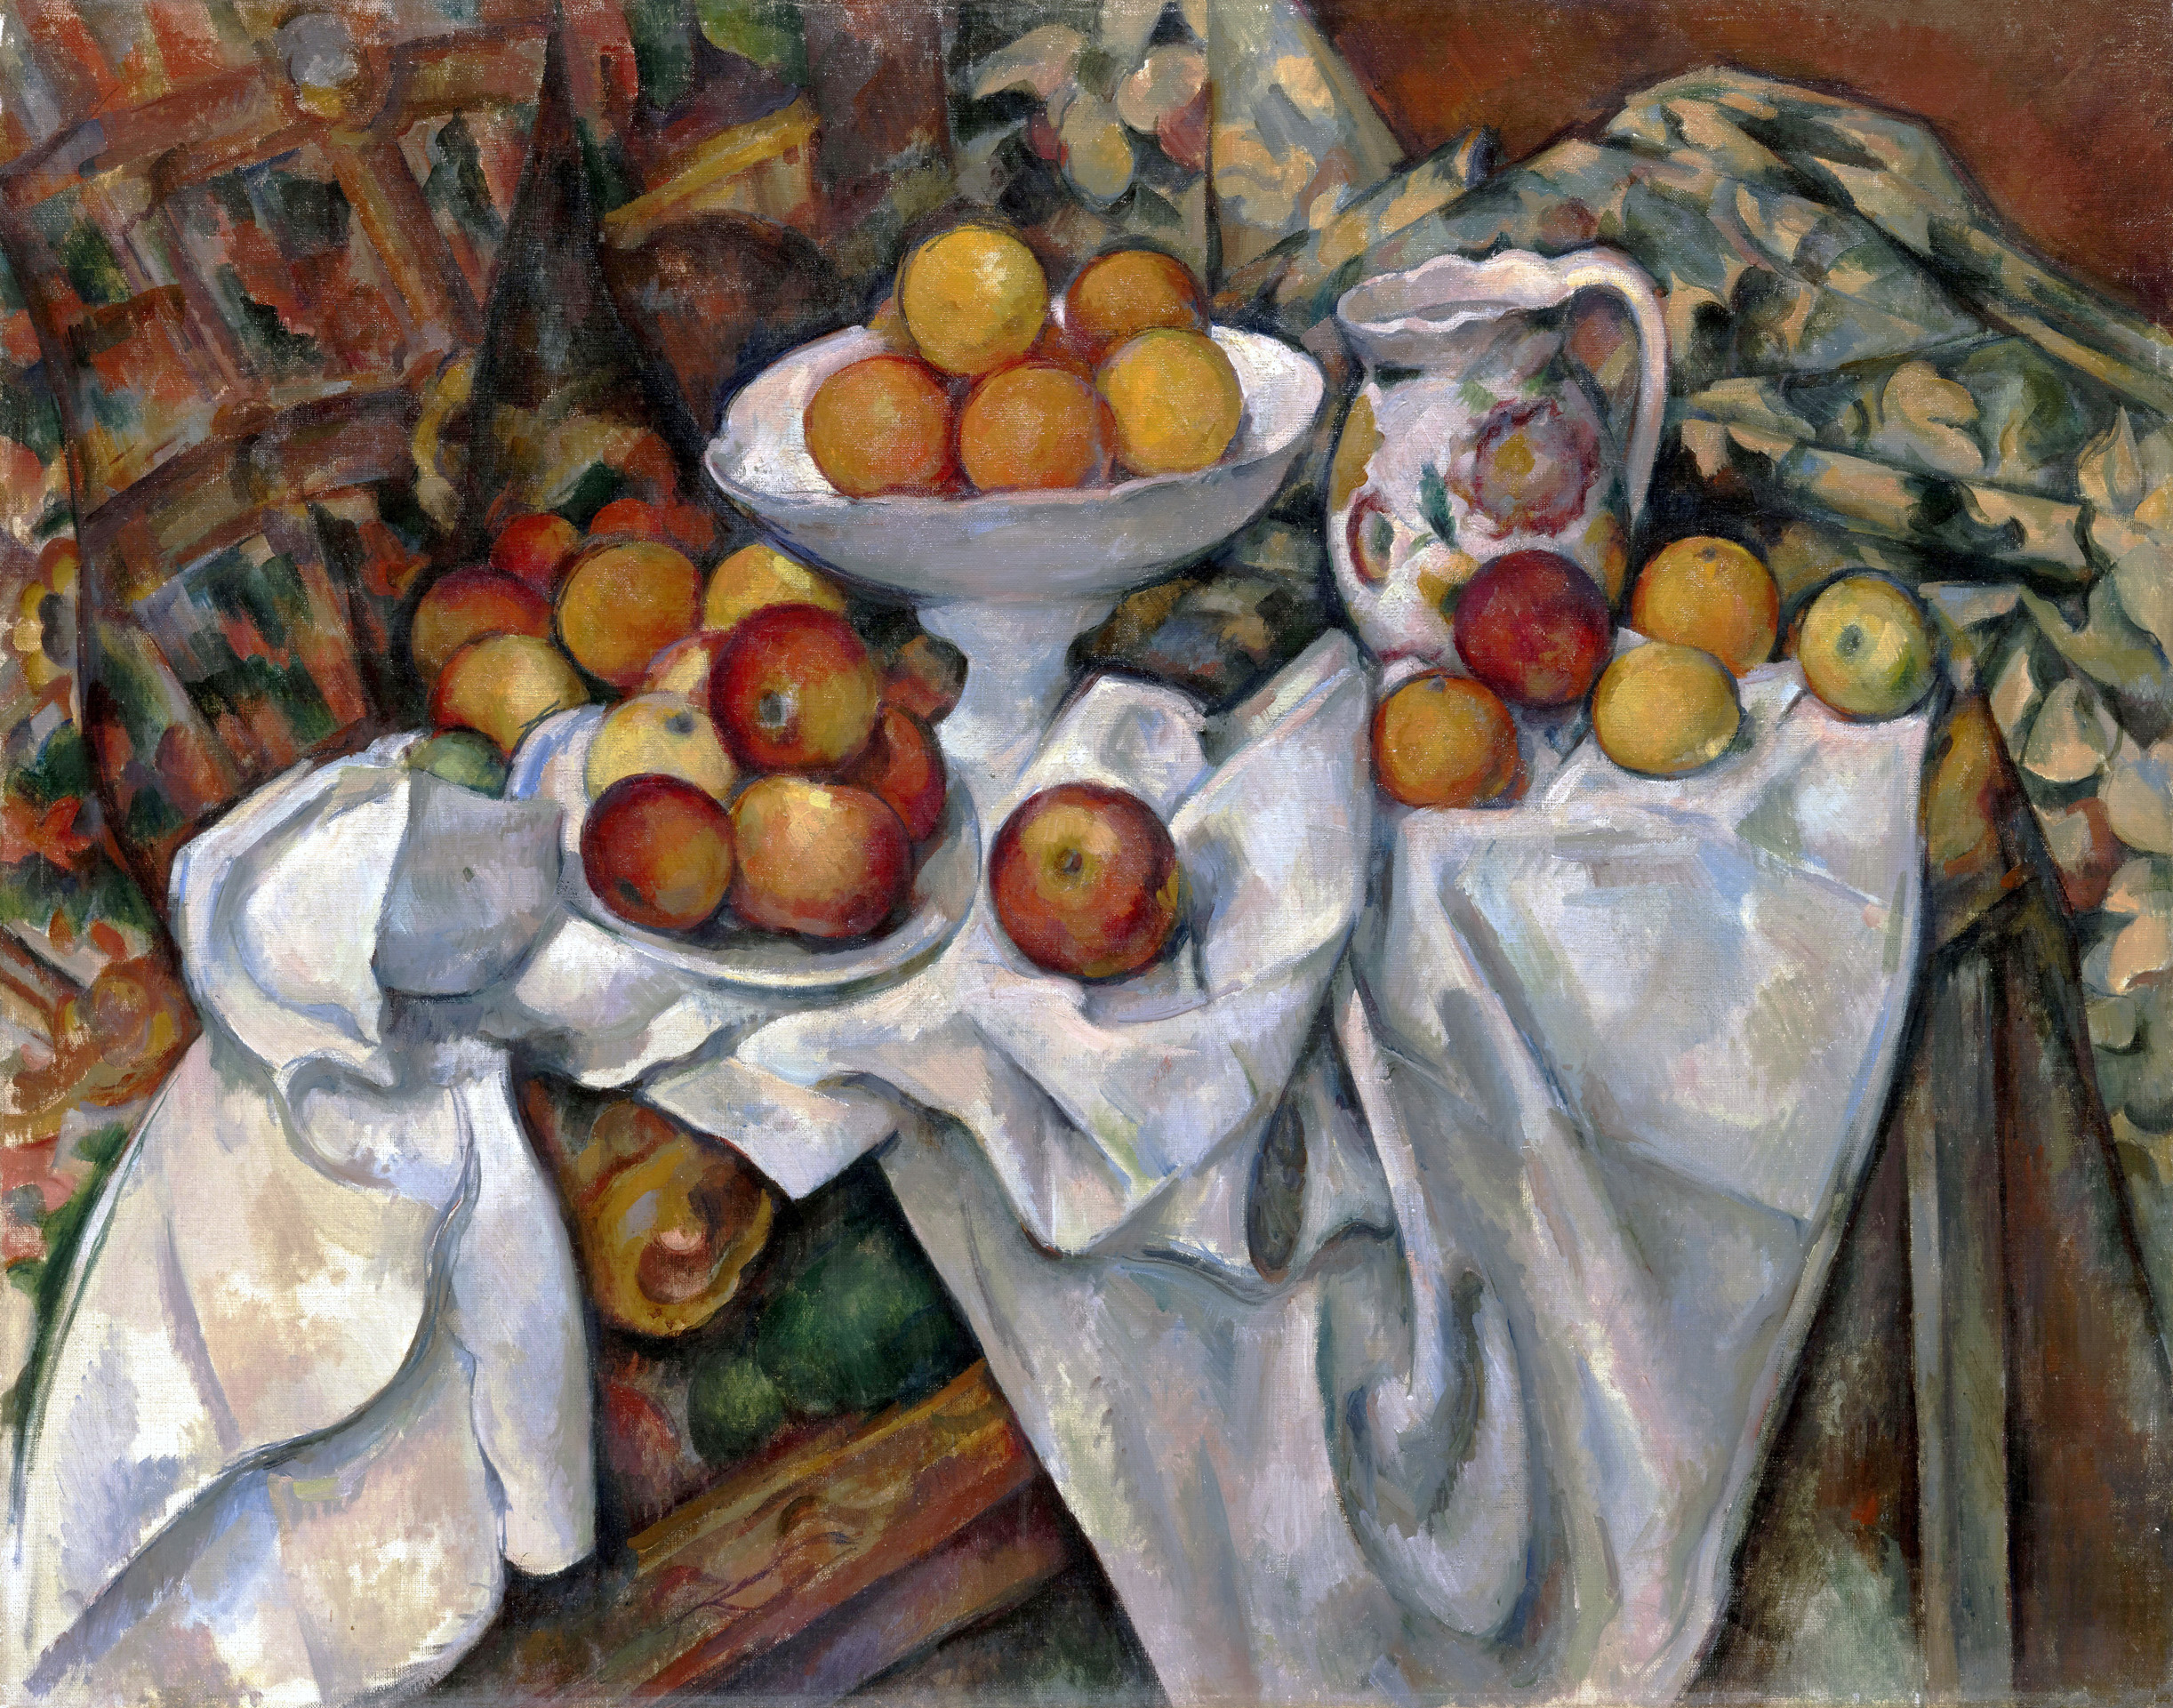 Paul Cézanne (1839 - 1906) "Martwa natura z jabłkami i pomarańczami", lata 1895-1900, źródło: Musée d’Orsay